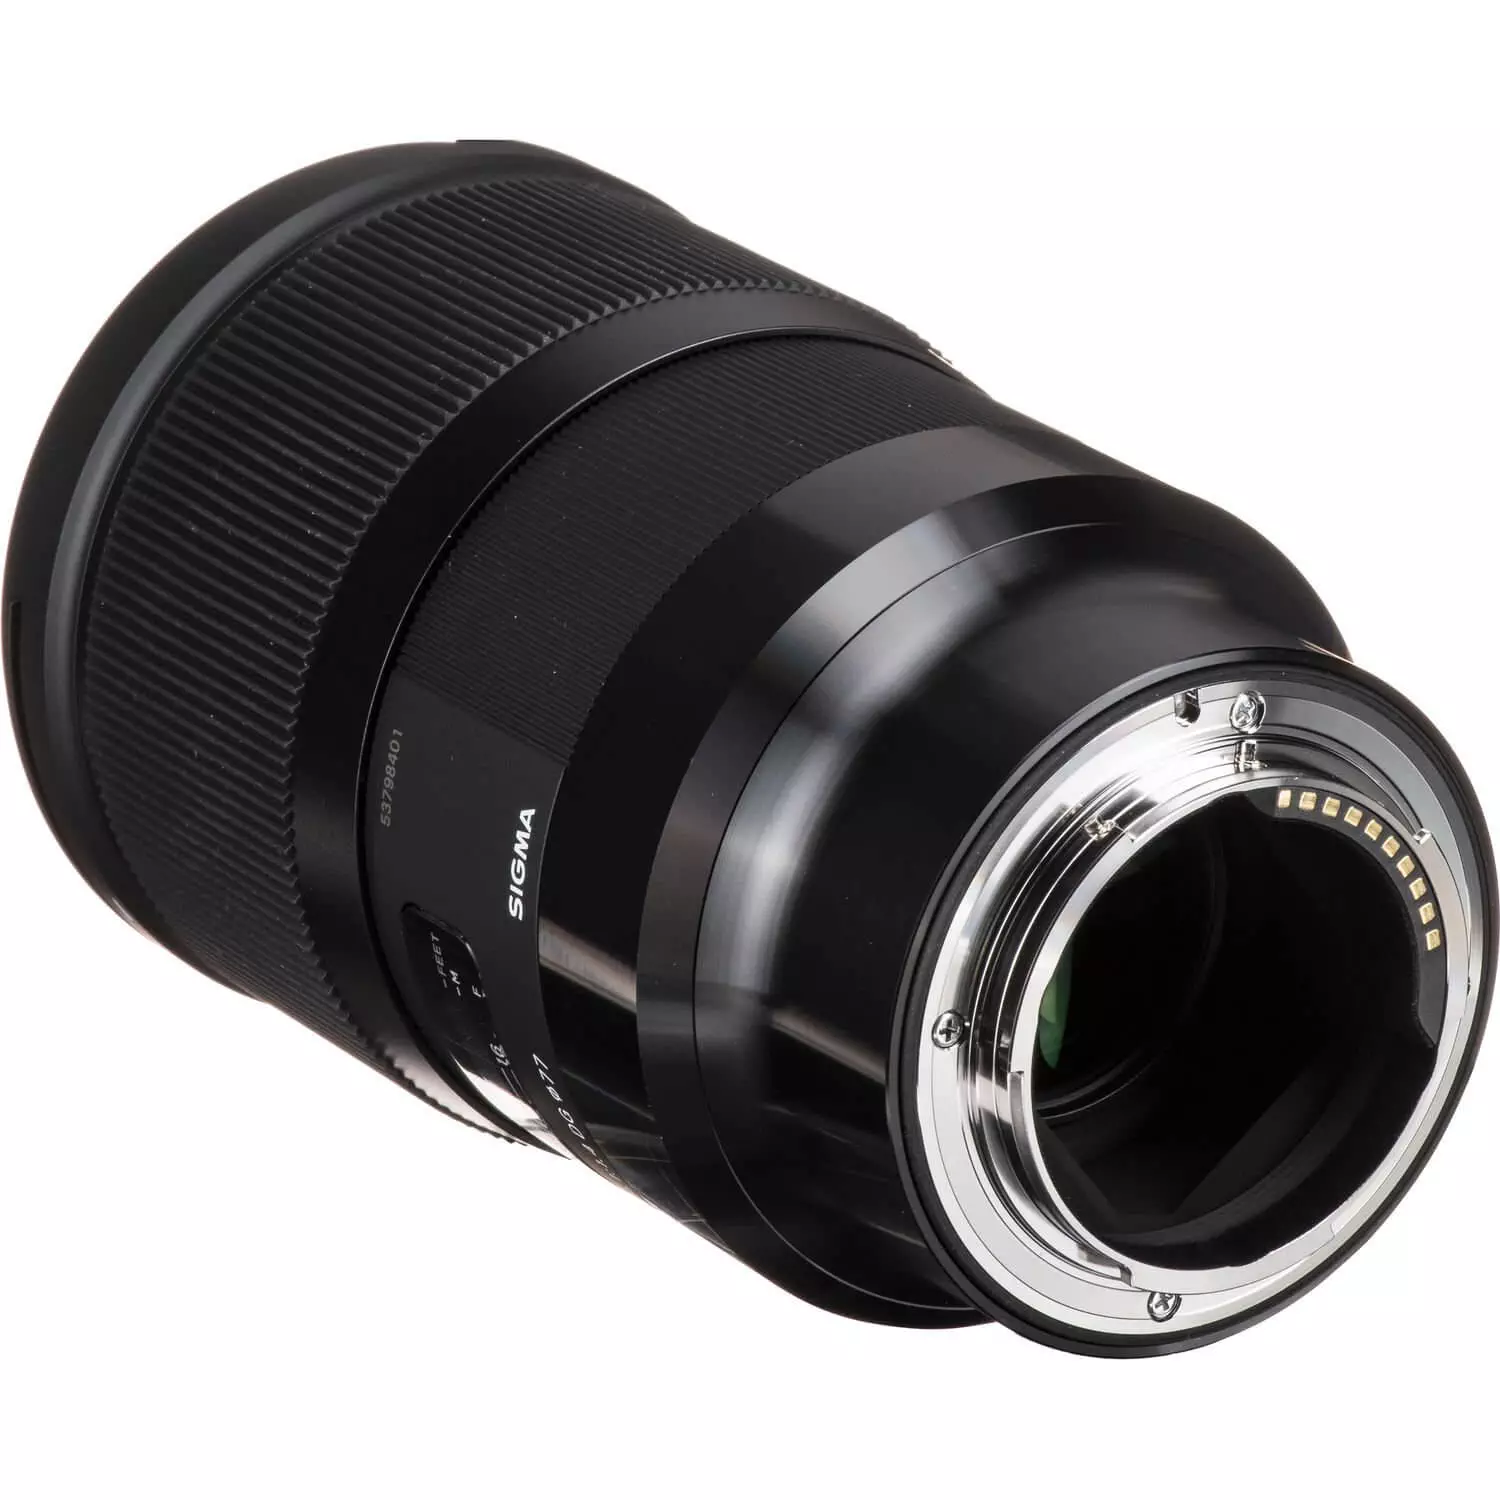 Sigma 28mm f1.4 DG HSM Art Lens for Sony E